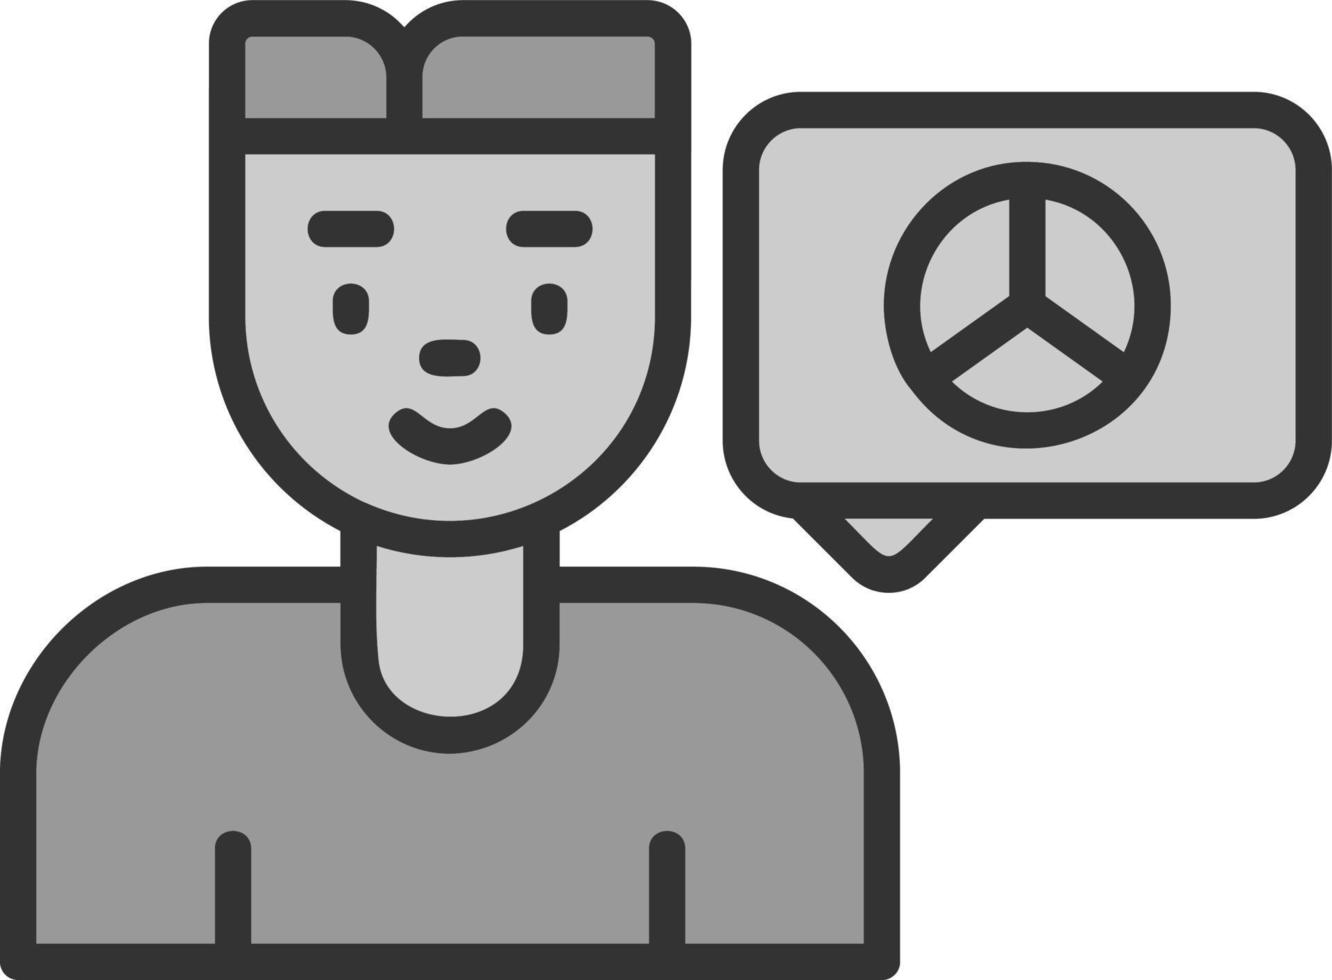 diseño de icono de vector de chat de paz